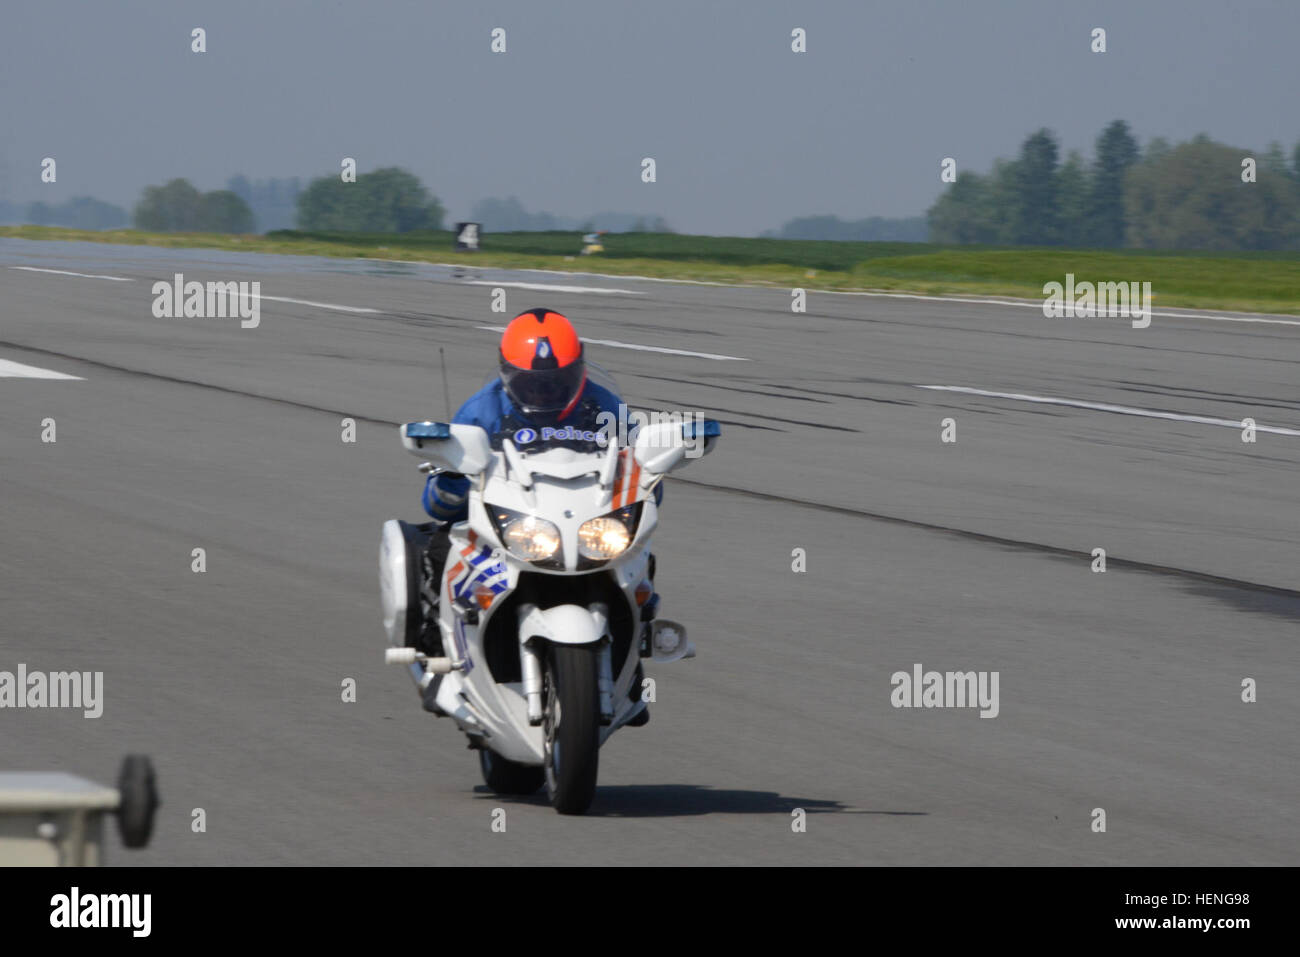 Une moto (Yamaha FJR 1300) de la province du Hainaut la police belge passe  devant le radar de vitesse stationnaire à une vitesse maximale de 240 km/h  (150 mph) au cours de